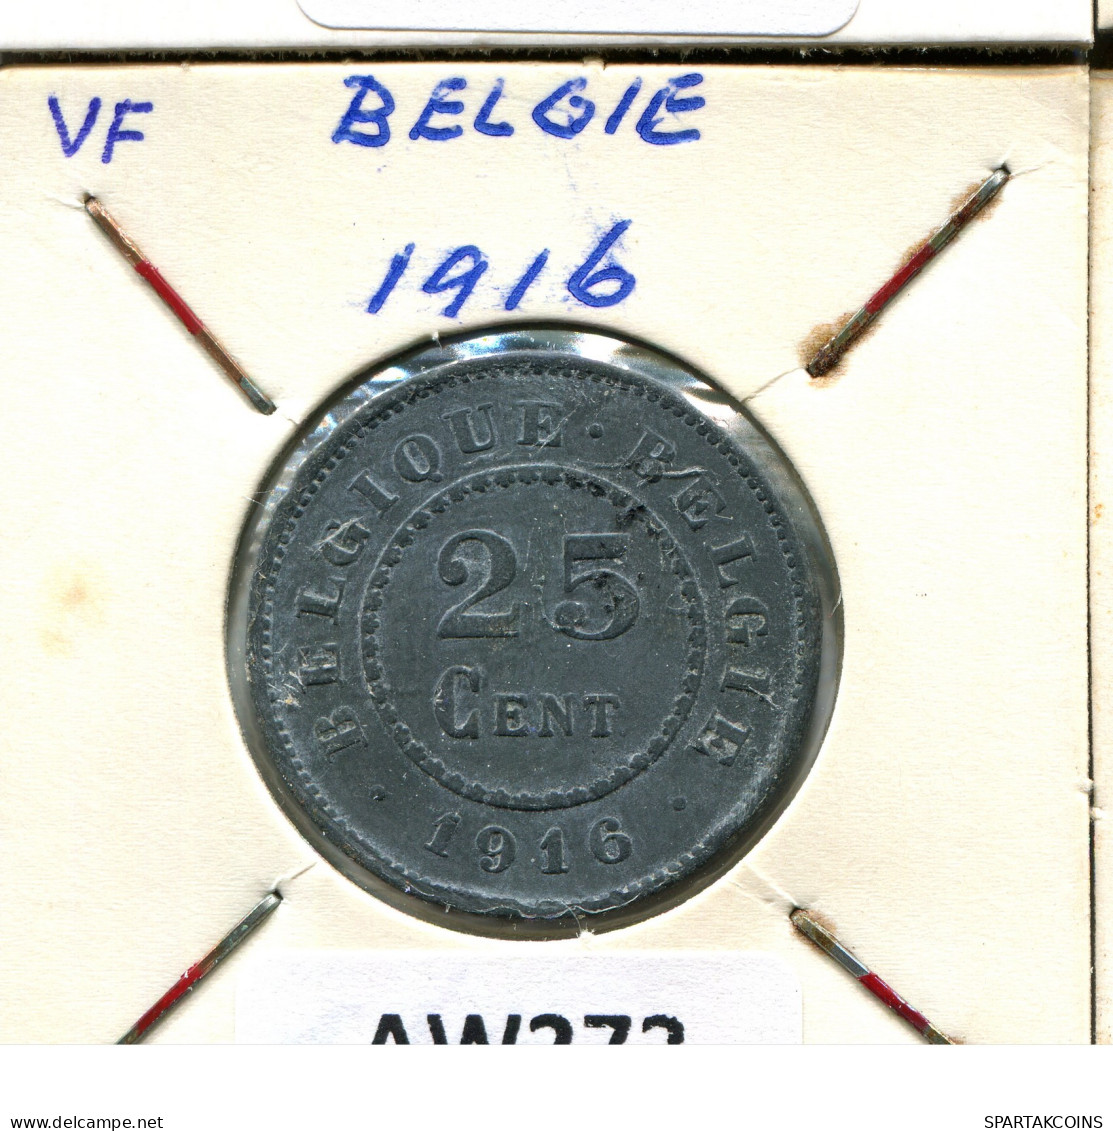 25 CENTIMES 1916 BELGIQUE-BELGIE BÉLGICA BELGIUM Moneda #AW272.E - 25 Centimes